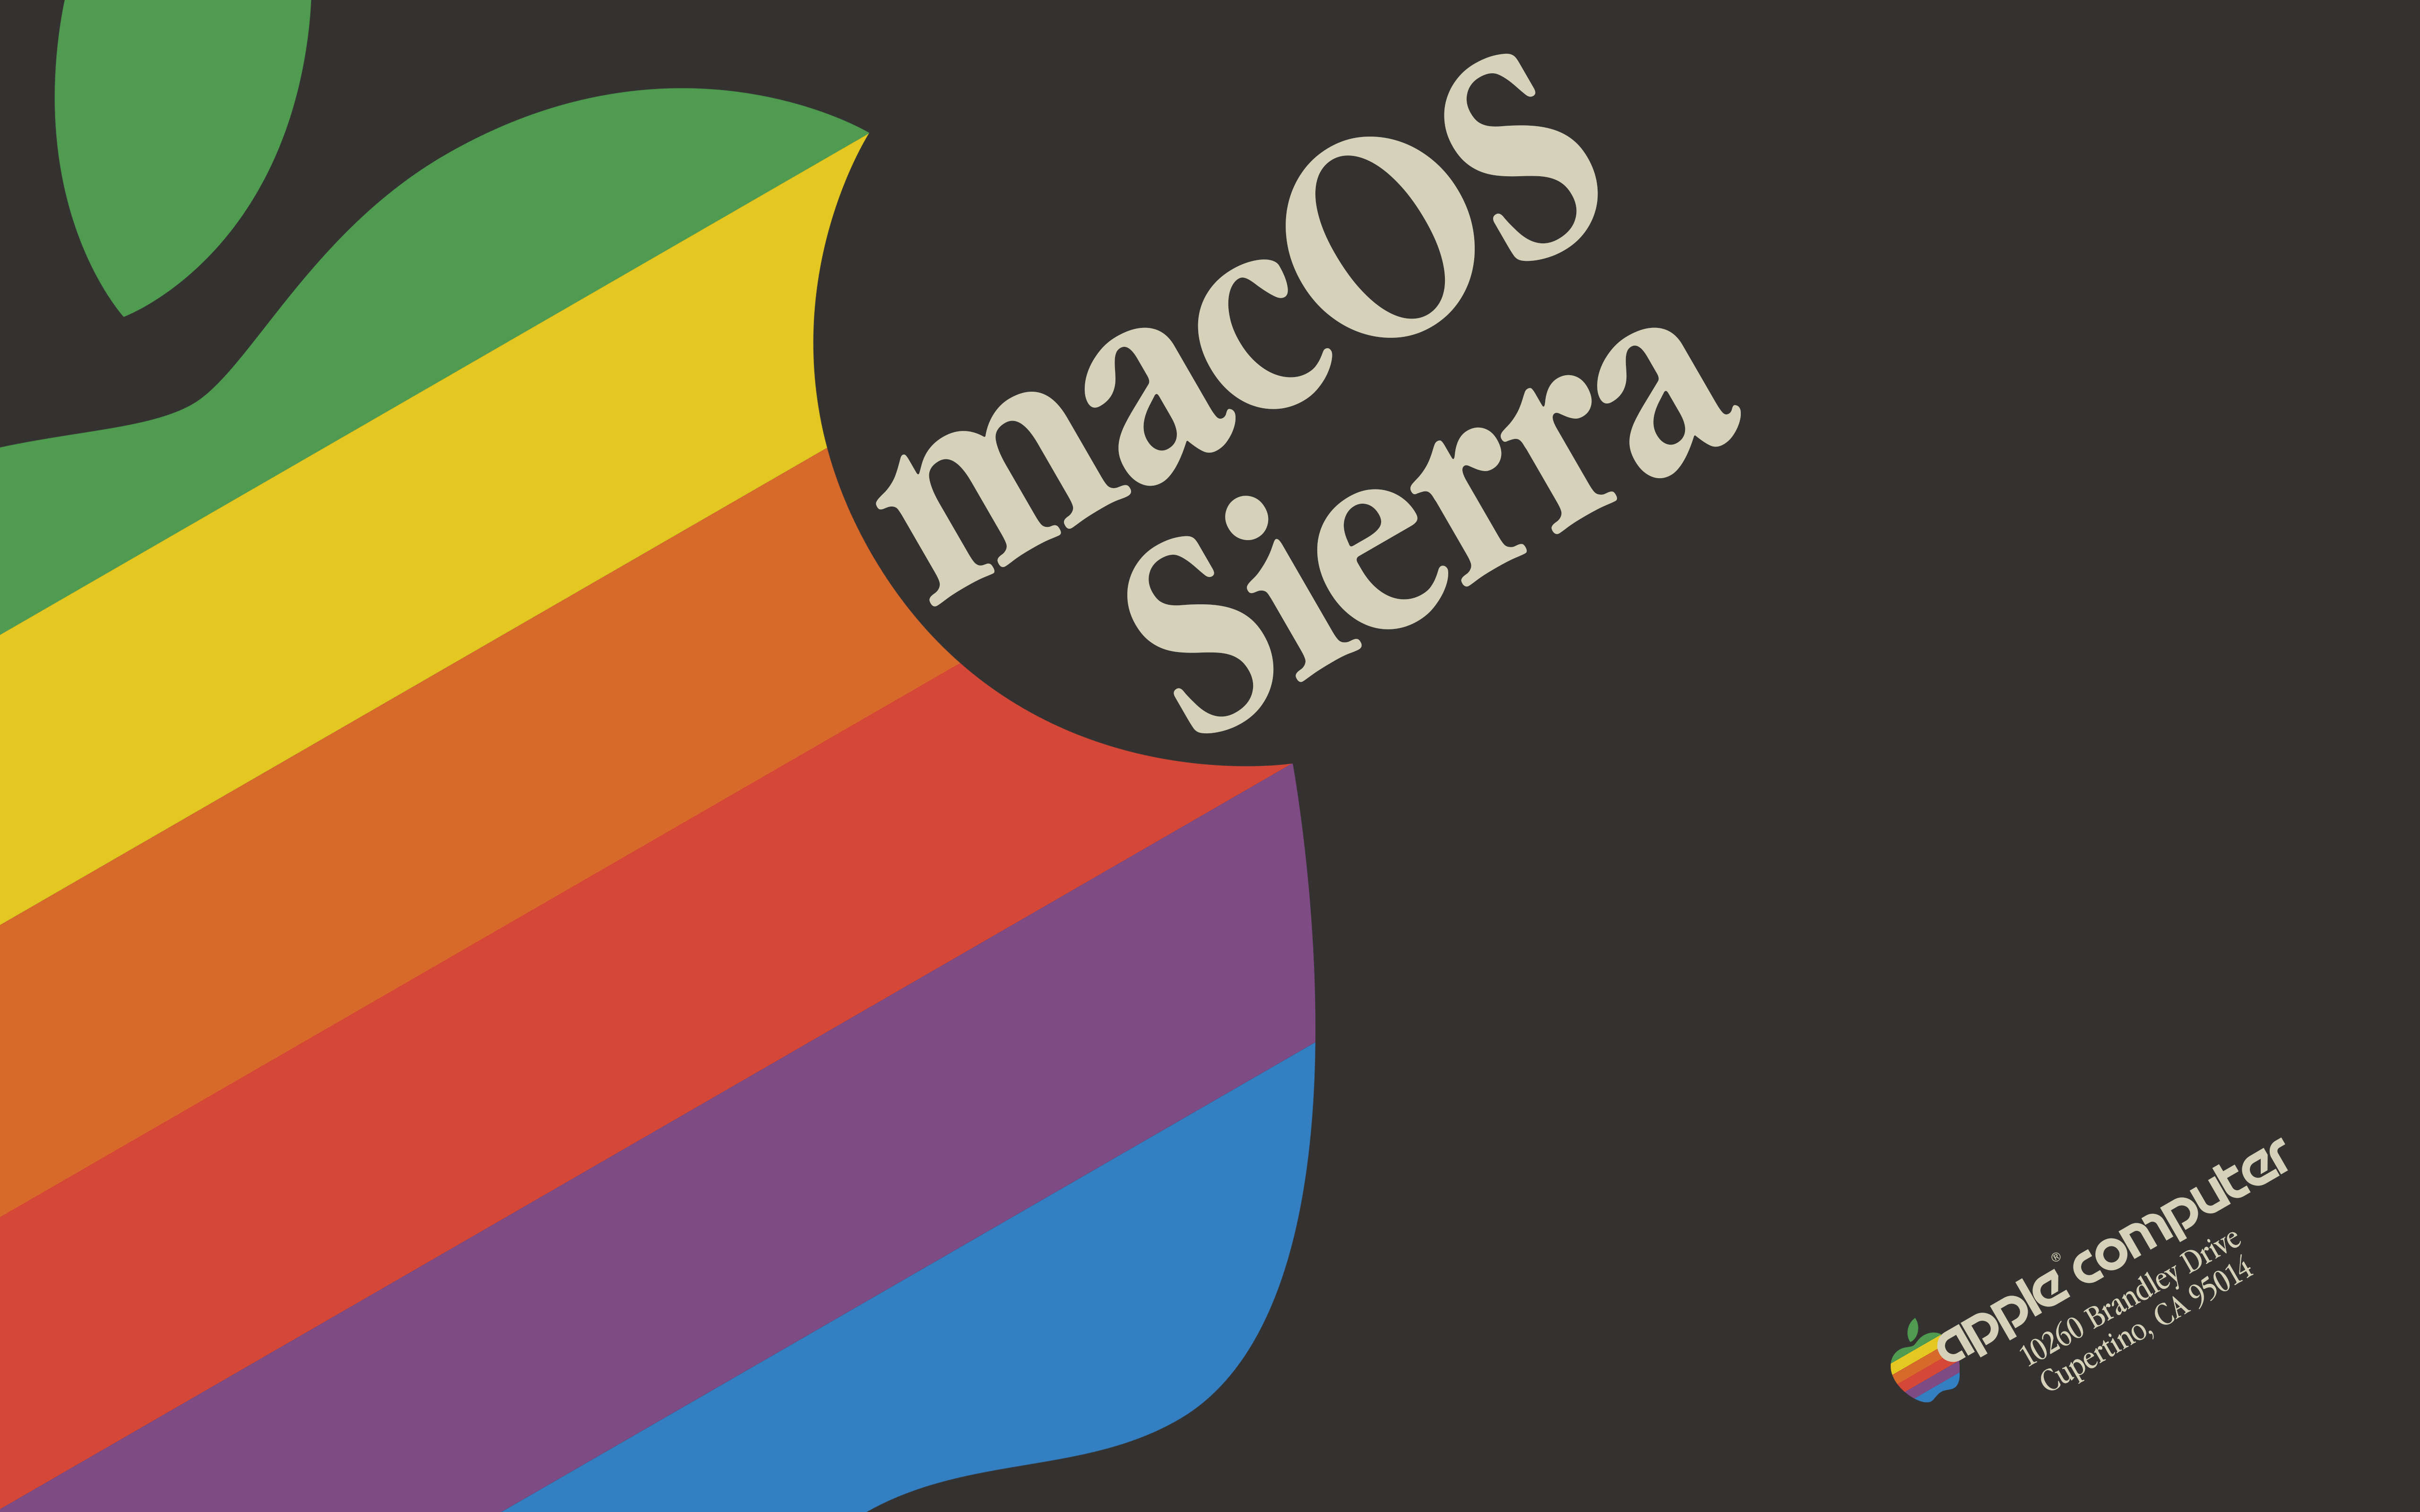 macOS Retro 70's retina wallpaper [OC][5120x3200]